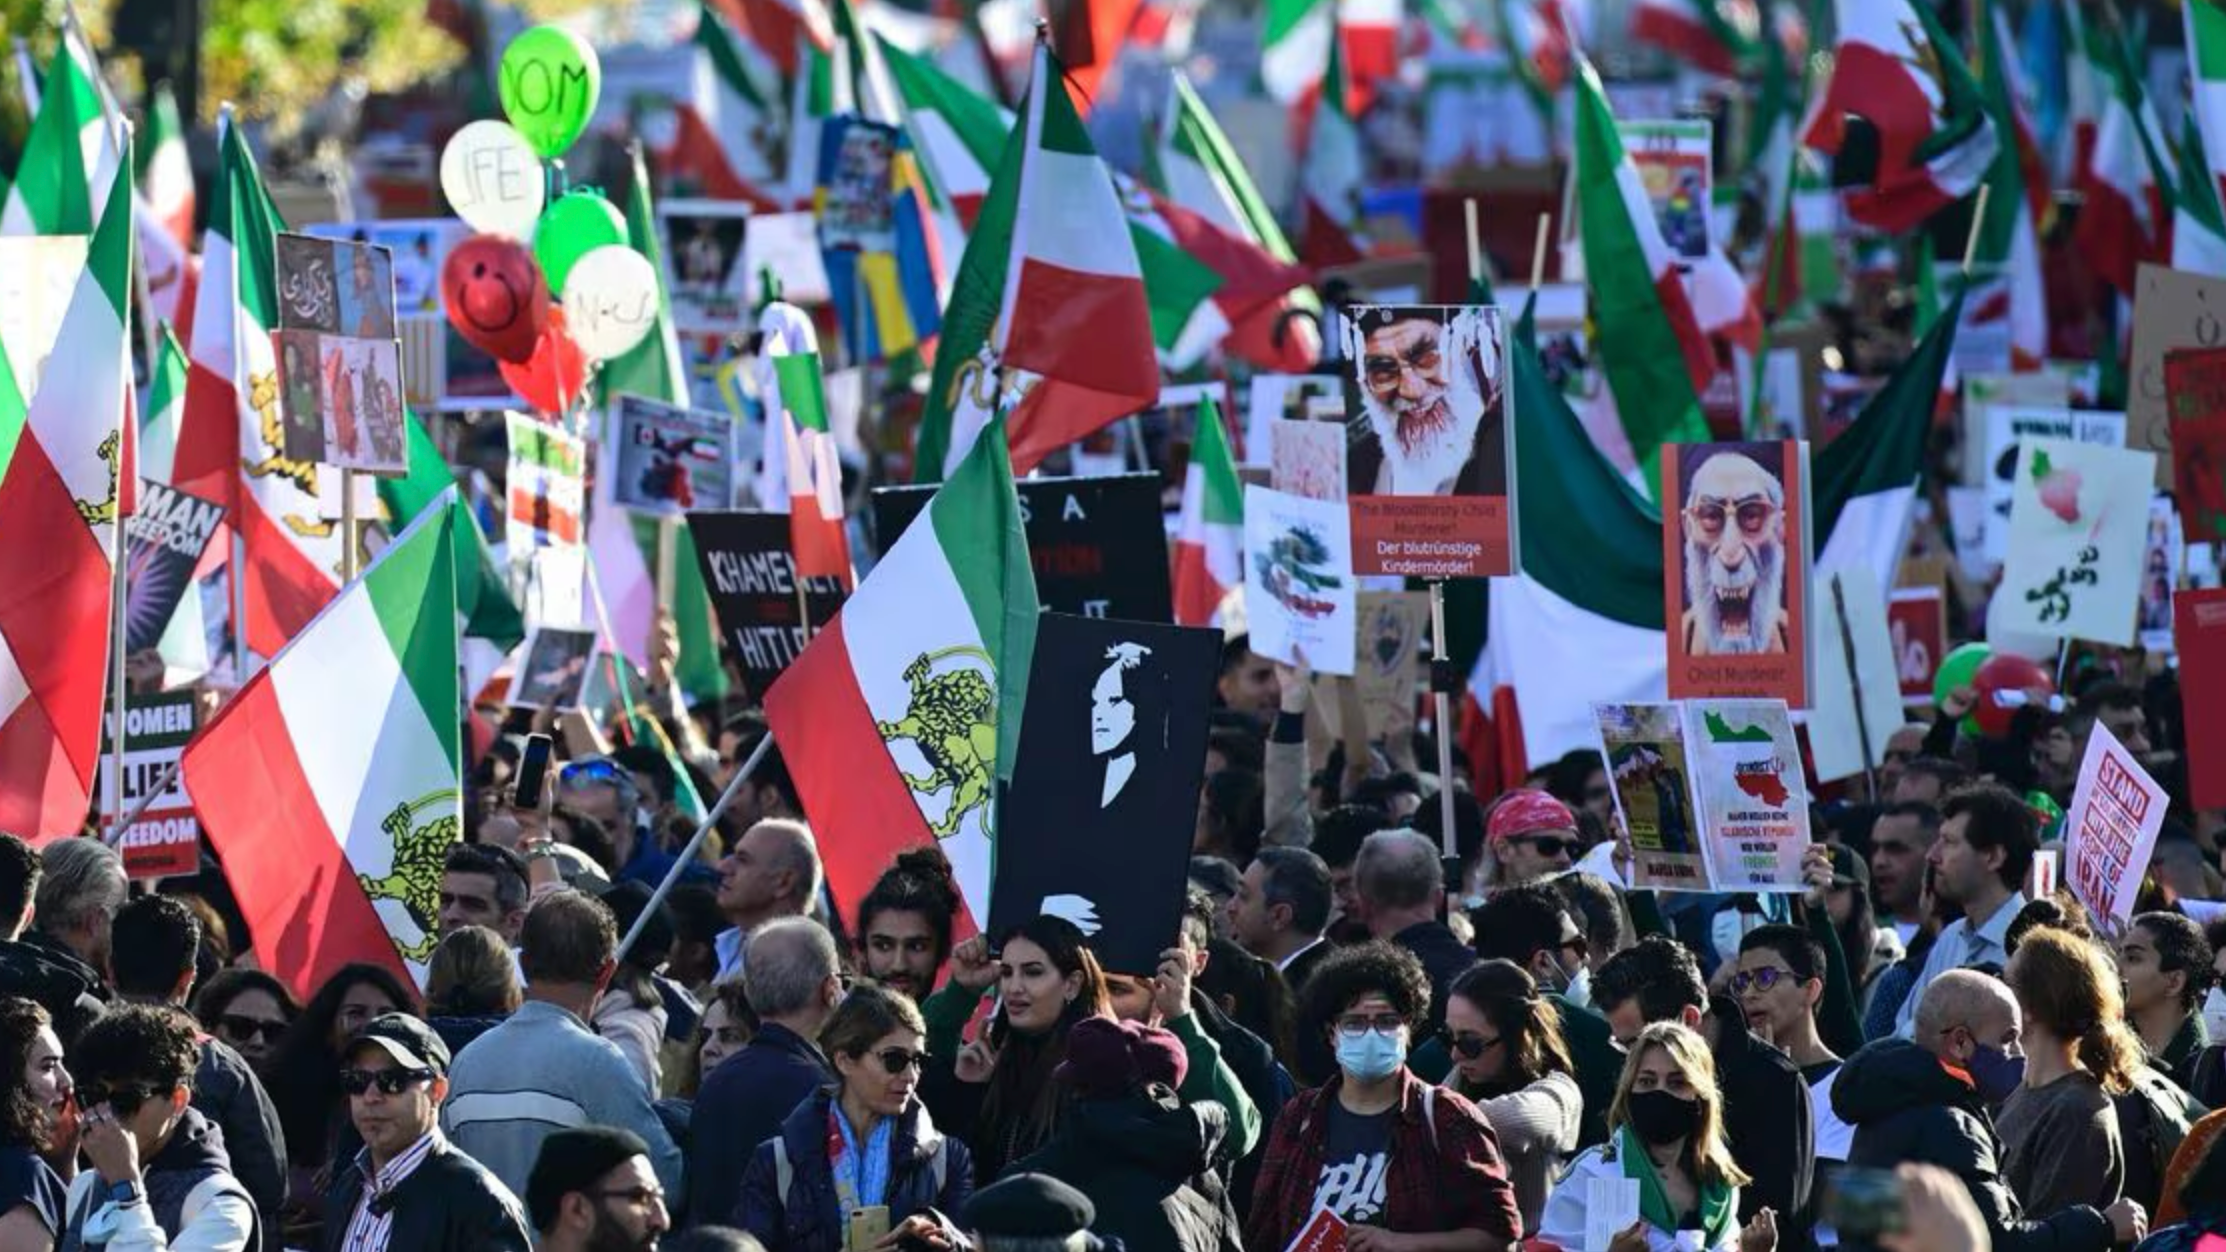 التجمع العالمي لإيران الحرة یوم 29 حزيران (یونیو) مترافقاً مع الاحتجاجات الضخمة للإيرانيين في برلين يعكس صدى صرخة إيران الأسيرة